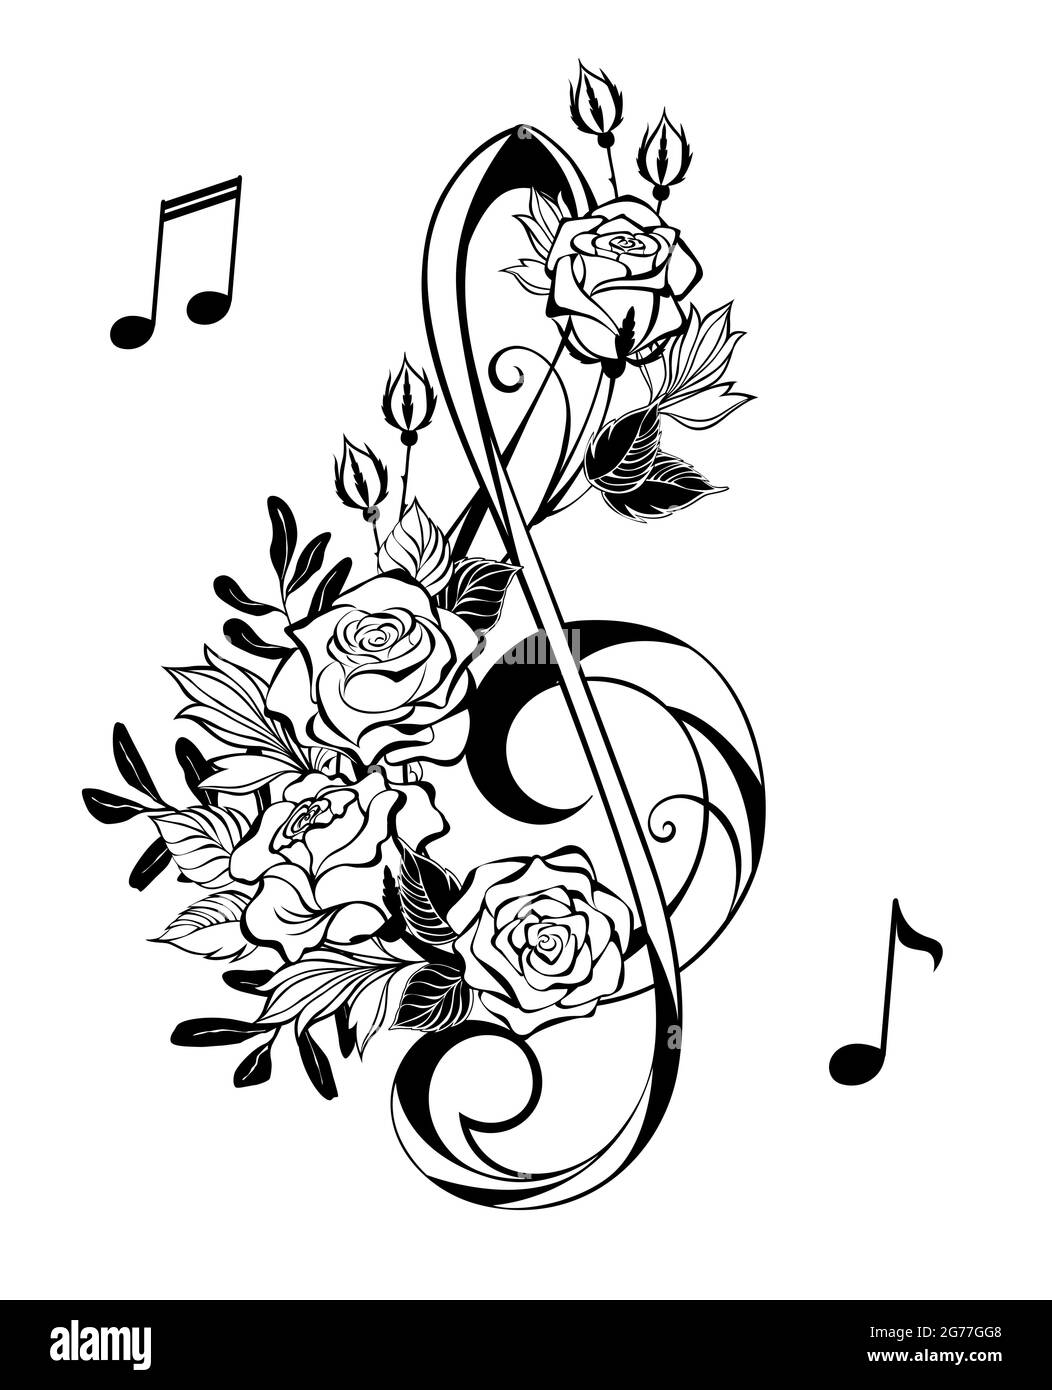 Tecla de contorno negra con rosas artísticas con hojas negras sobre fondo blanco. Estilo de tatuaje. Hendidura de agudos Ilustración del Vector